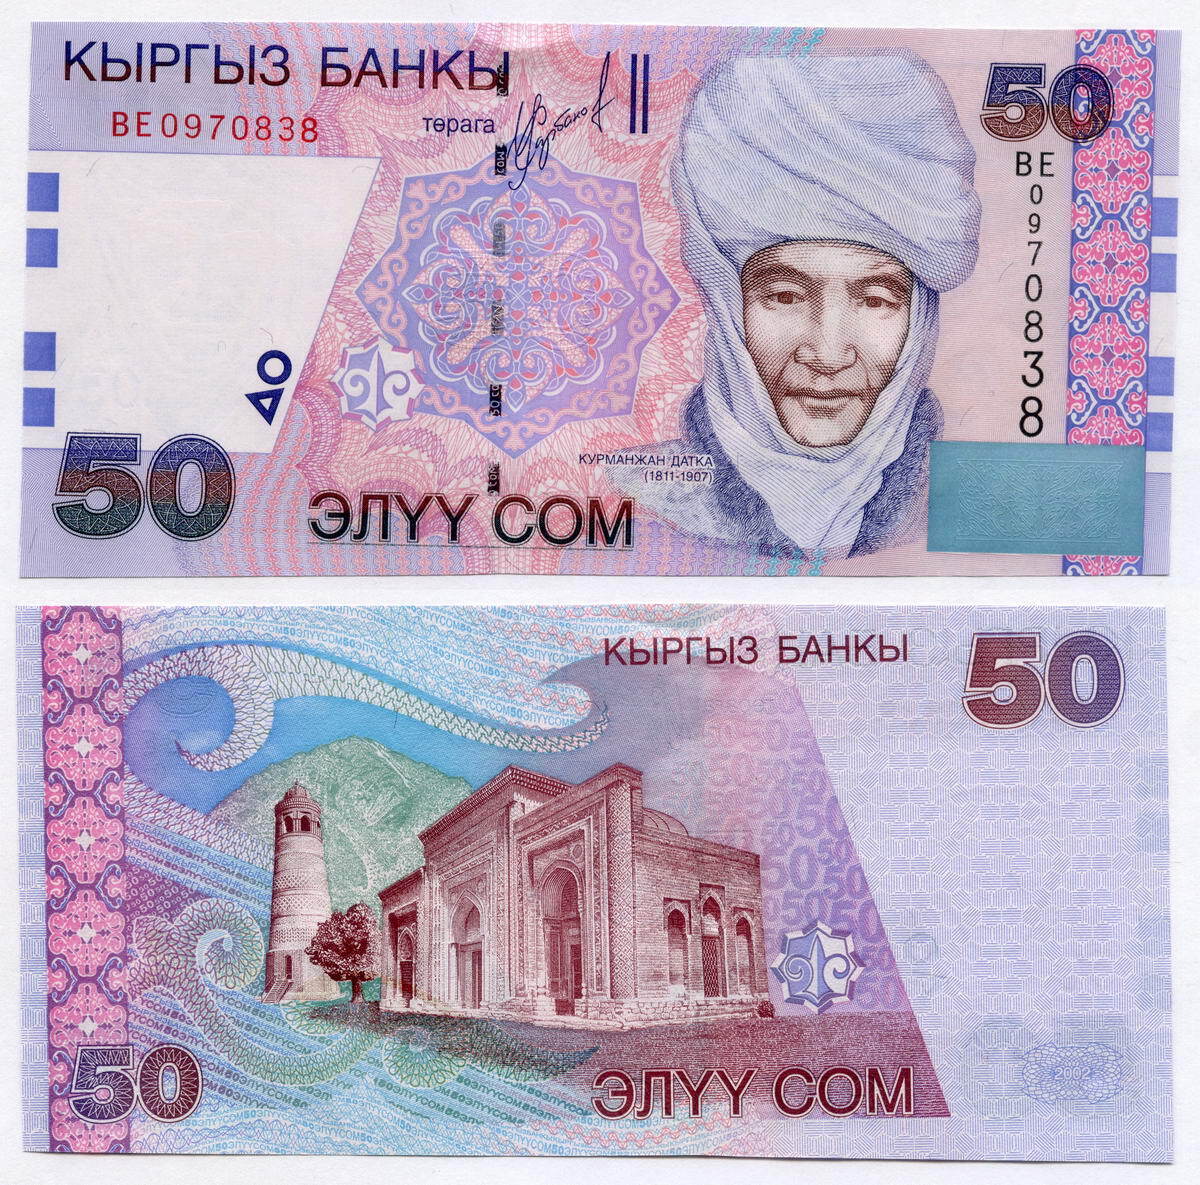 Киргизский сум. 20 Сом Киргизия банкнота. Купюра 50 сом. Кыргызский сом. Купюра 200 сомов.